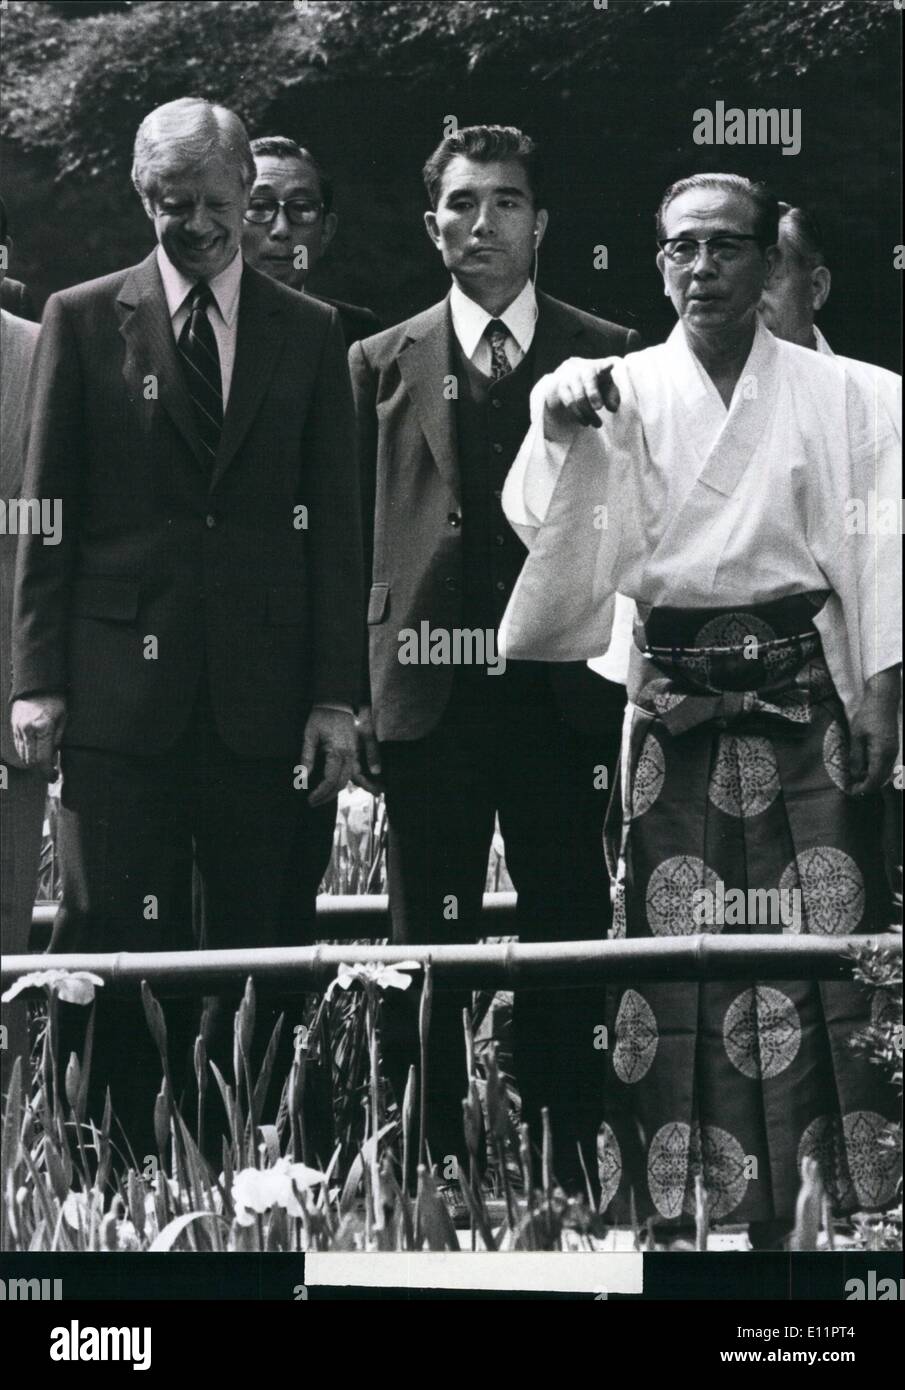 Juin 06, 1979 - Le président Carter et son épouse accueillent le corps diplomatique au Palais d'Akasaka, le premier jour de leur visite d'État au Japon, tandis que l'empereur Hirohito (arrière) et le prince héritier Akihito et de la princesse Michiko (à gauche). Banque D'Images